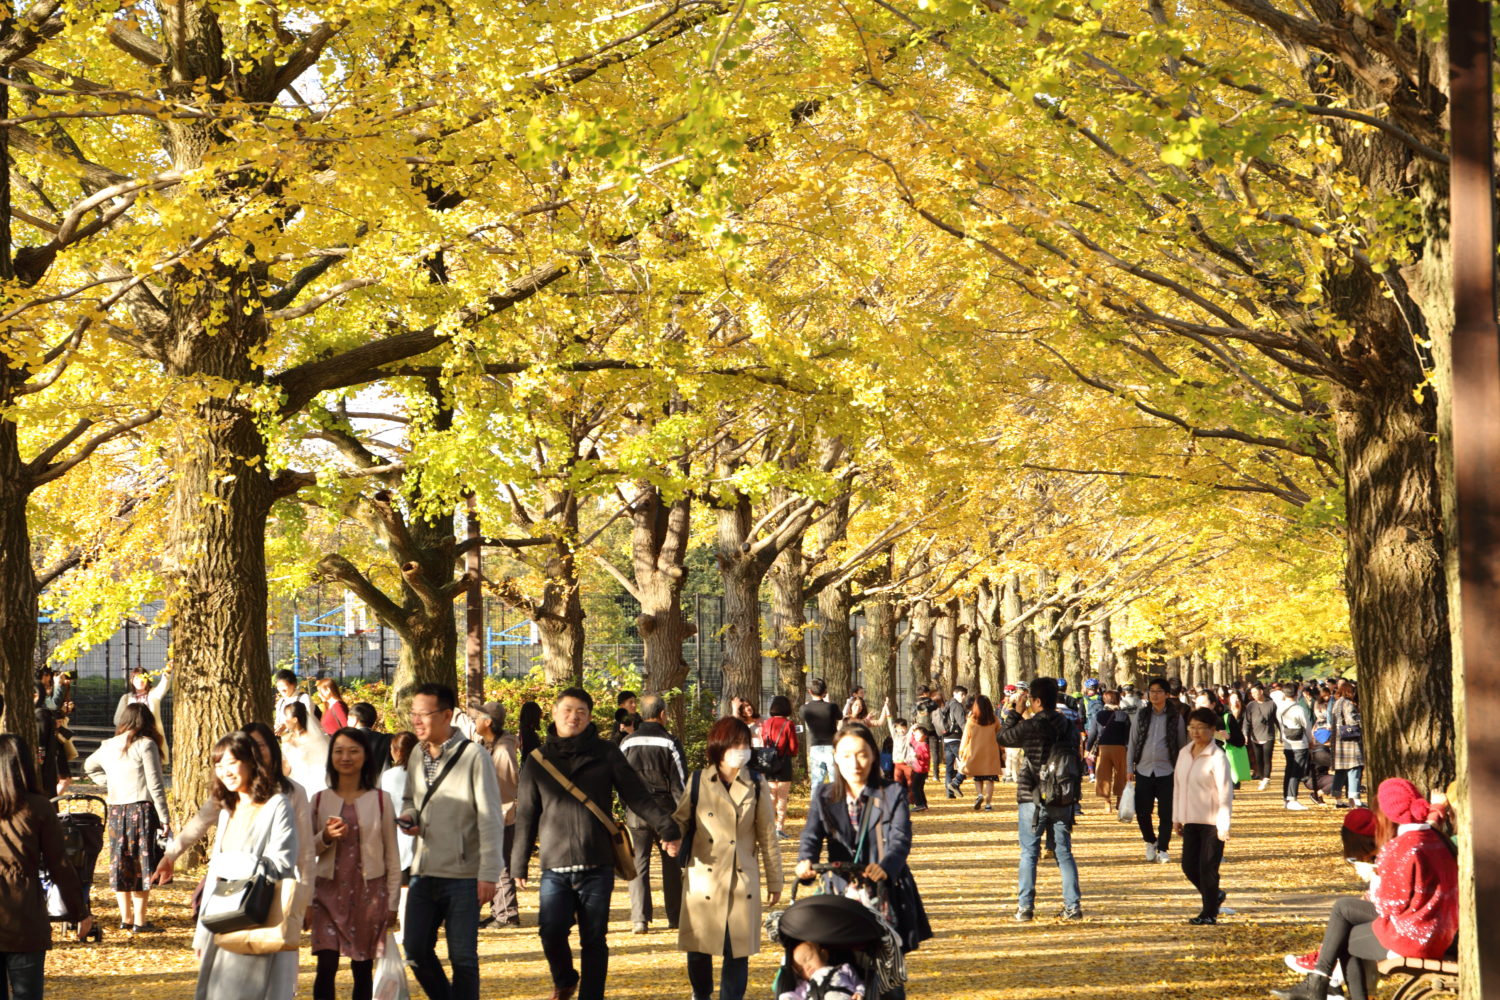 イチョウ並木・紅葉の名所 国営昭和記念公園に行ってみたら絶景が待っていました。(2018.11.17)